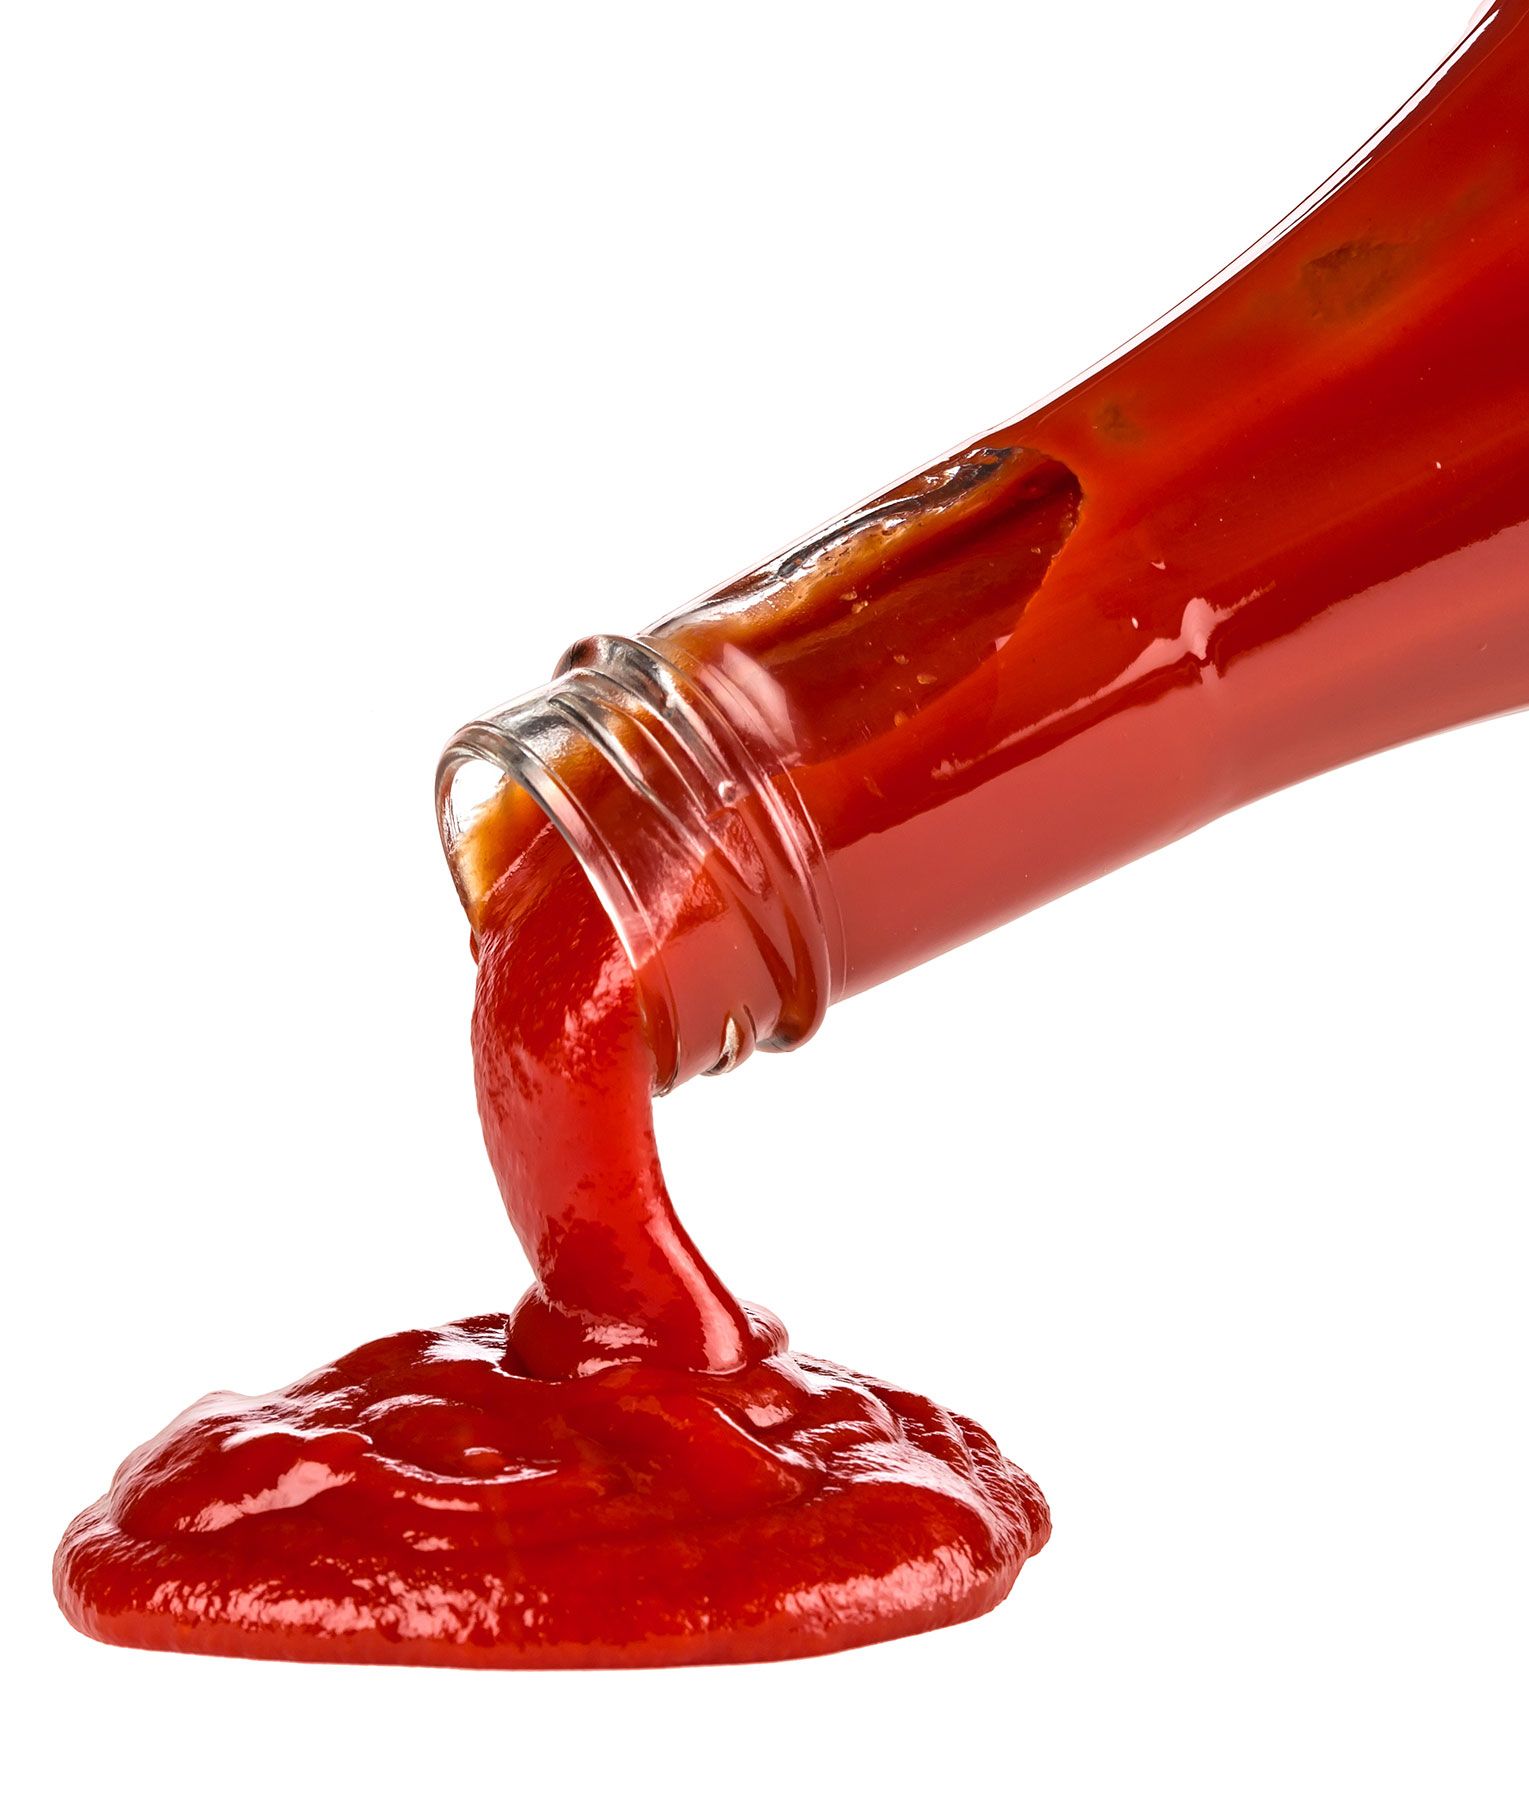 Po mnenju Science najboljši način, kako ketchup spraviti iz steklenice